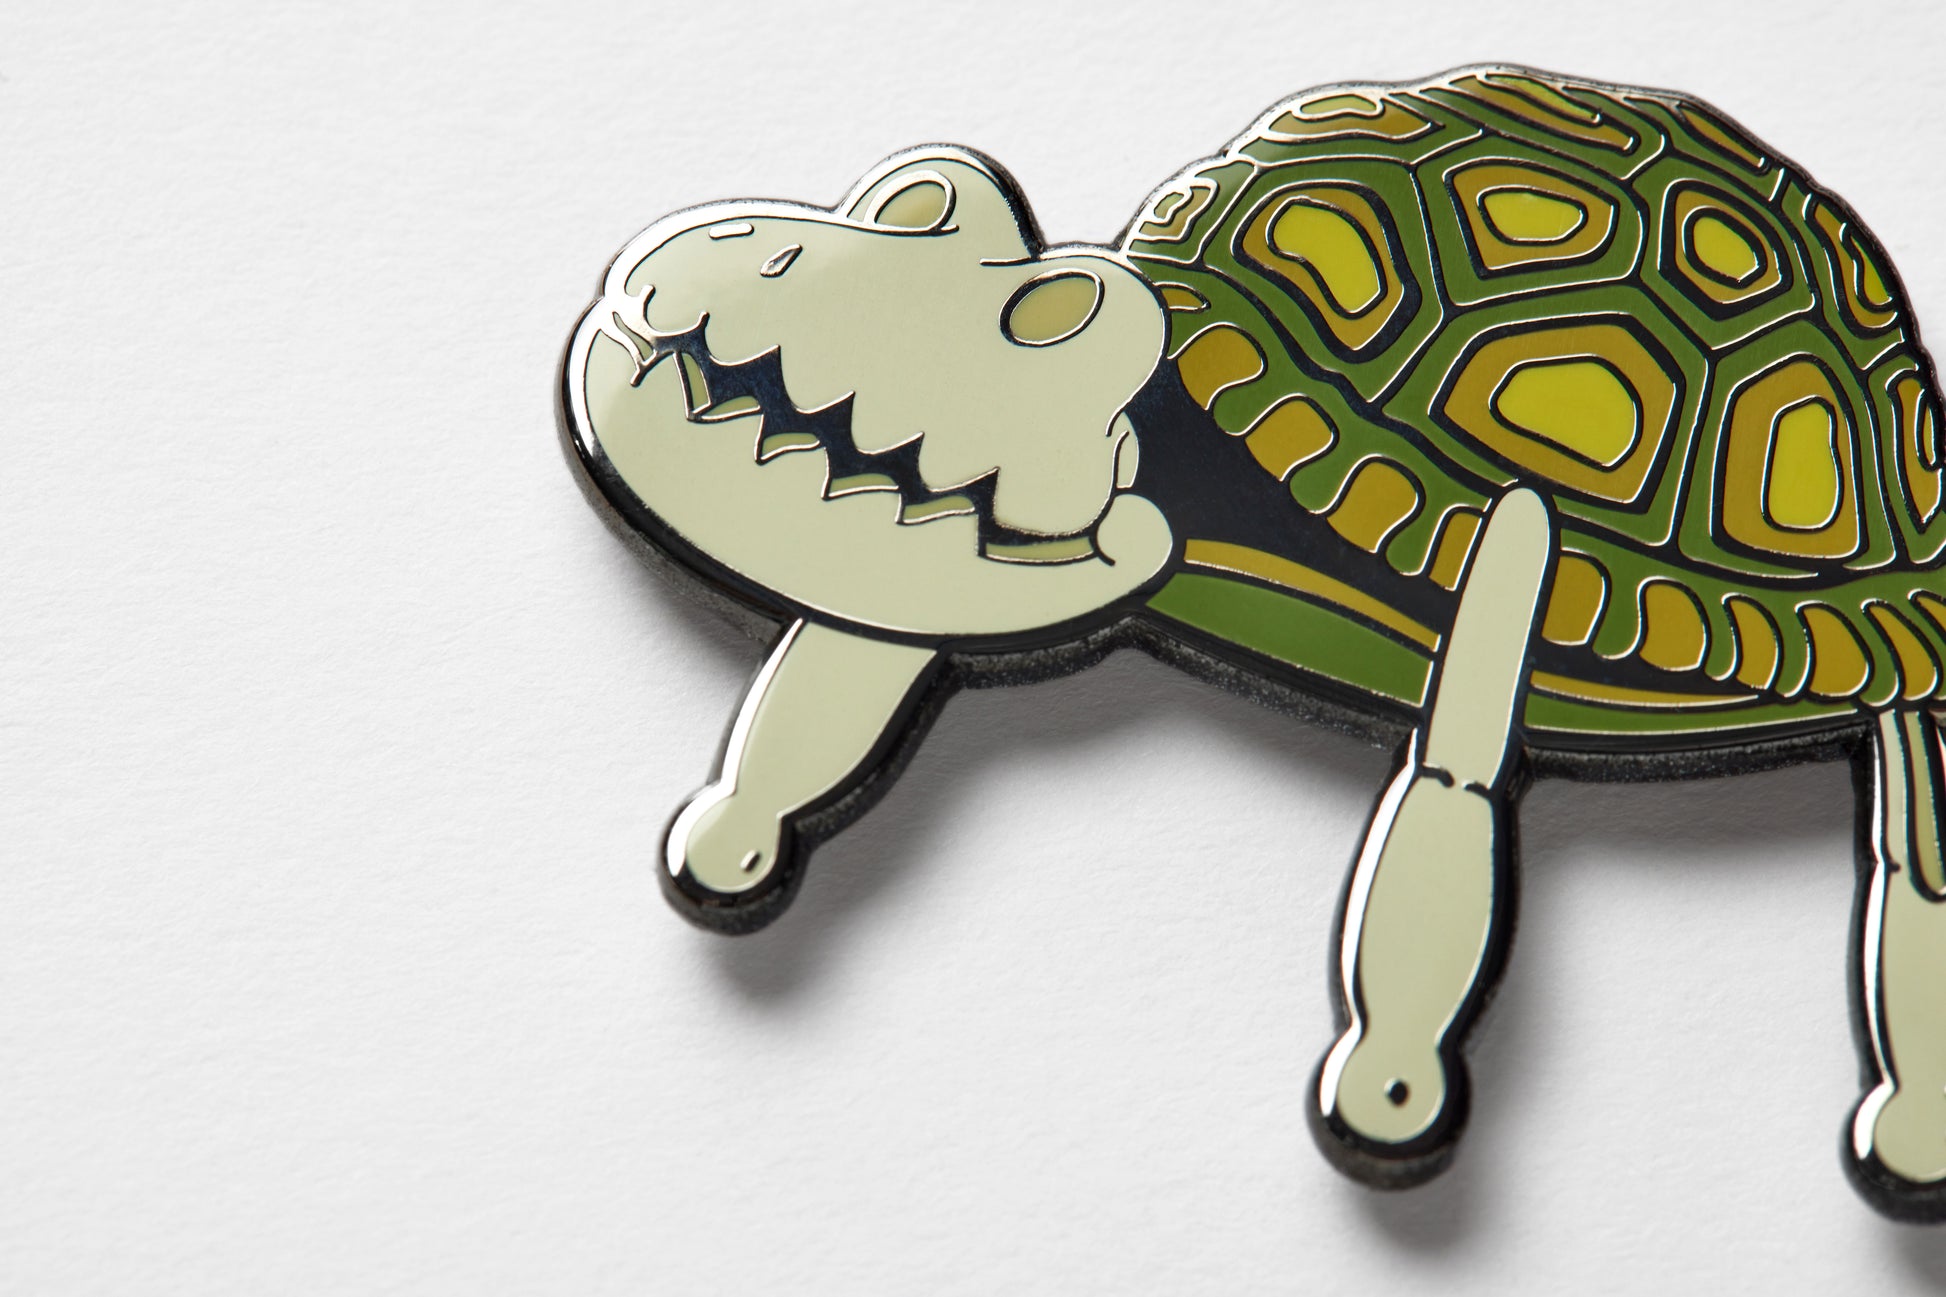 Coraline turtle toy enamel pin